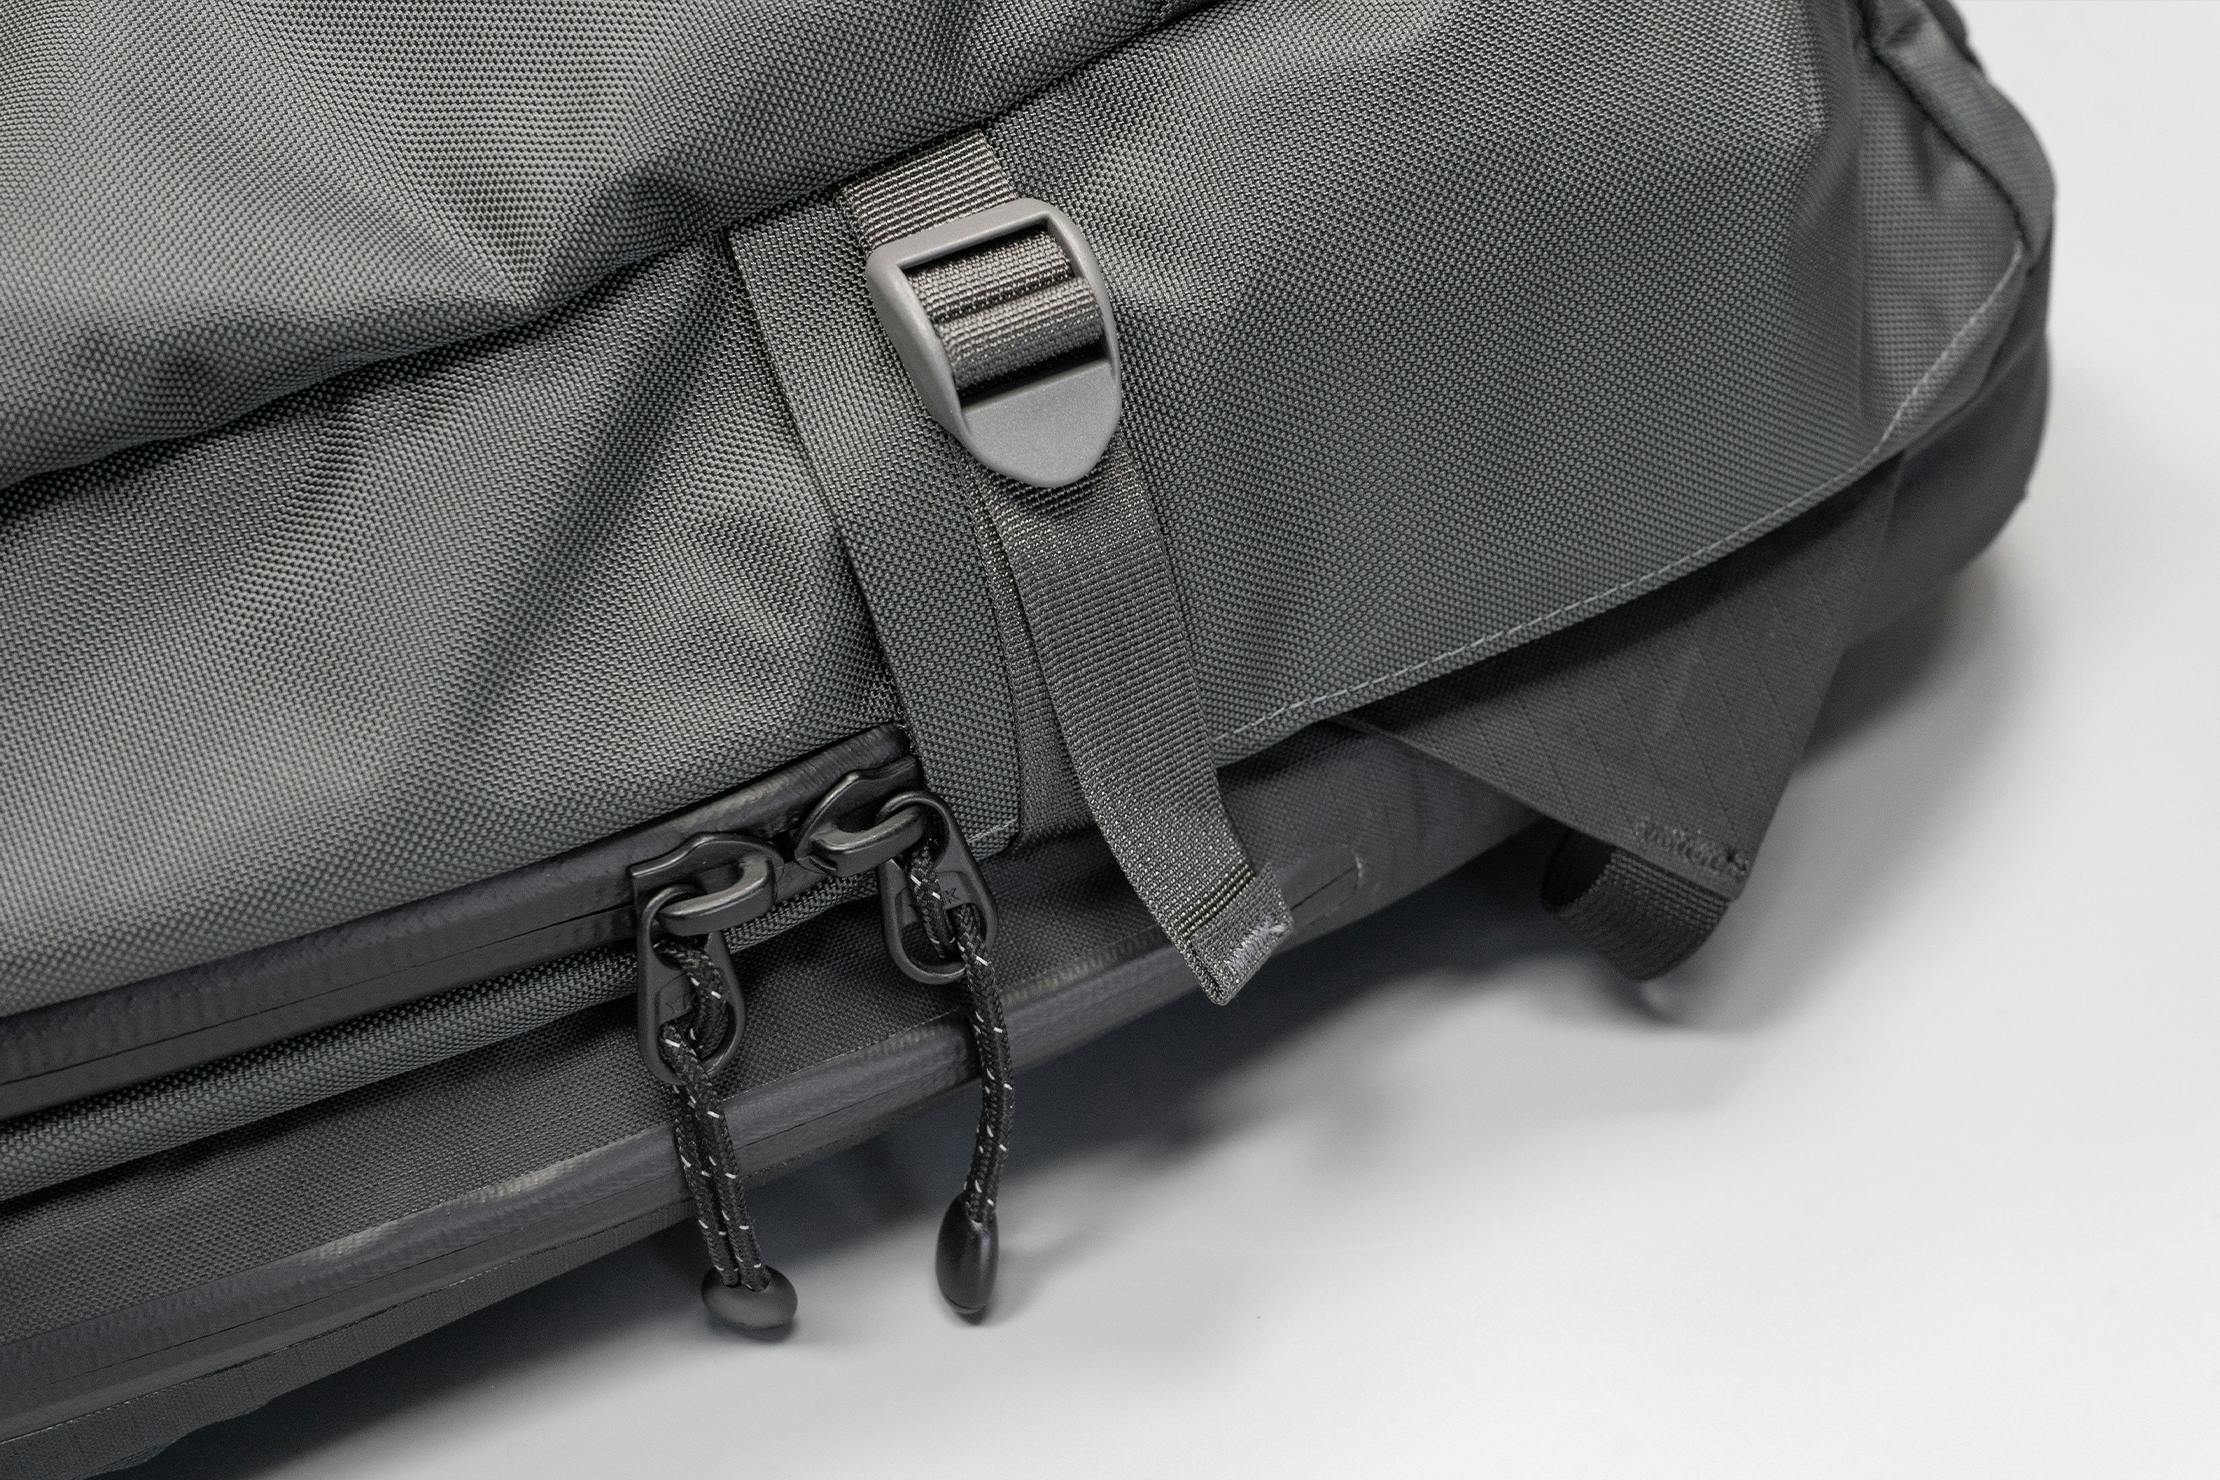 Lander Commuter Backpack 25L Review | Pack Hacker